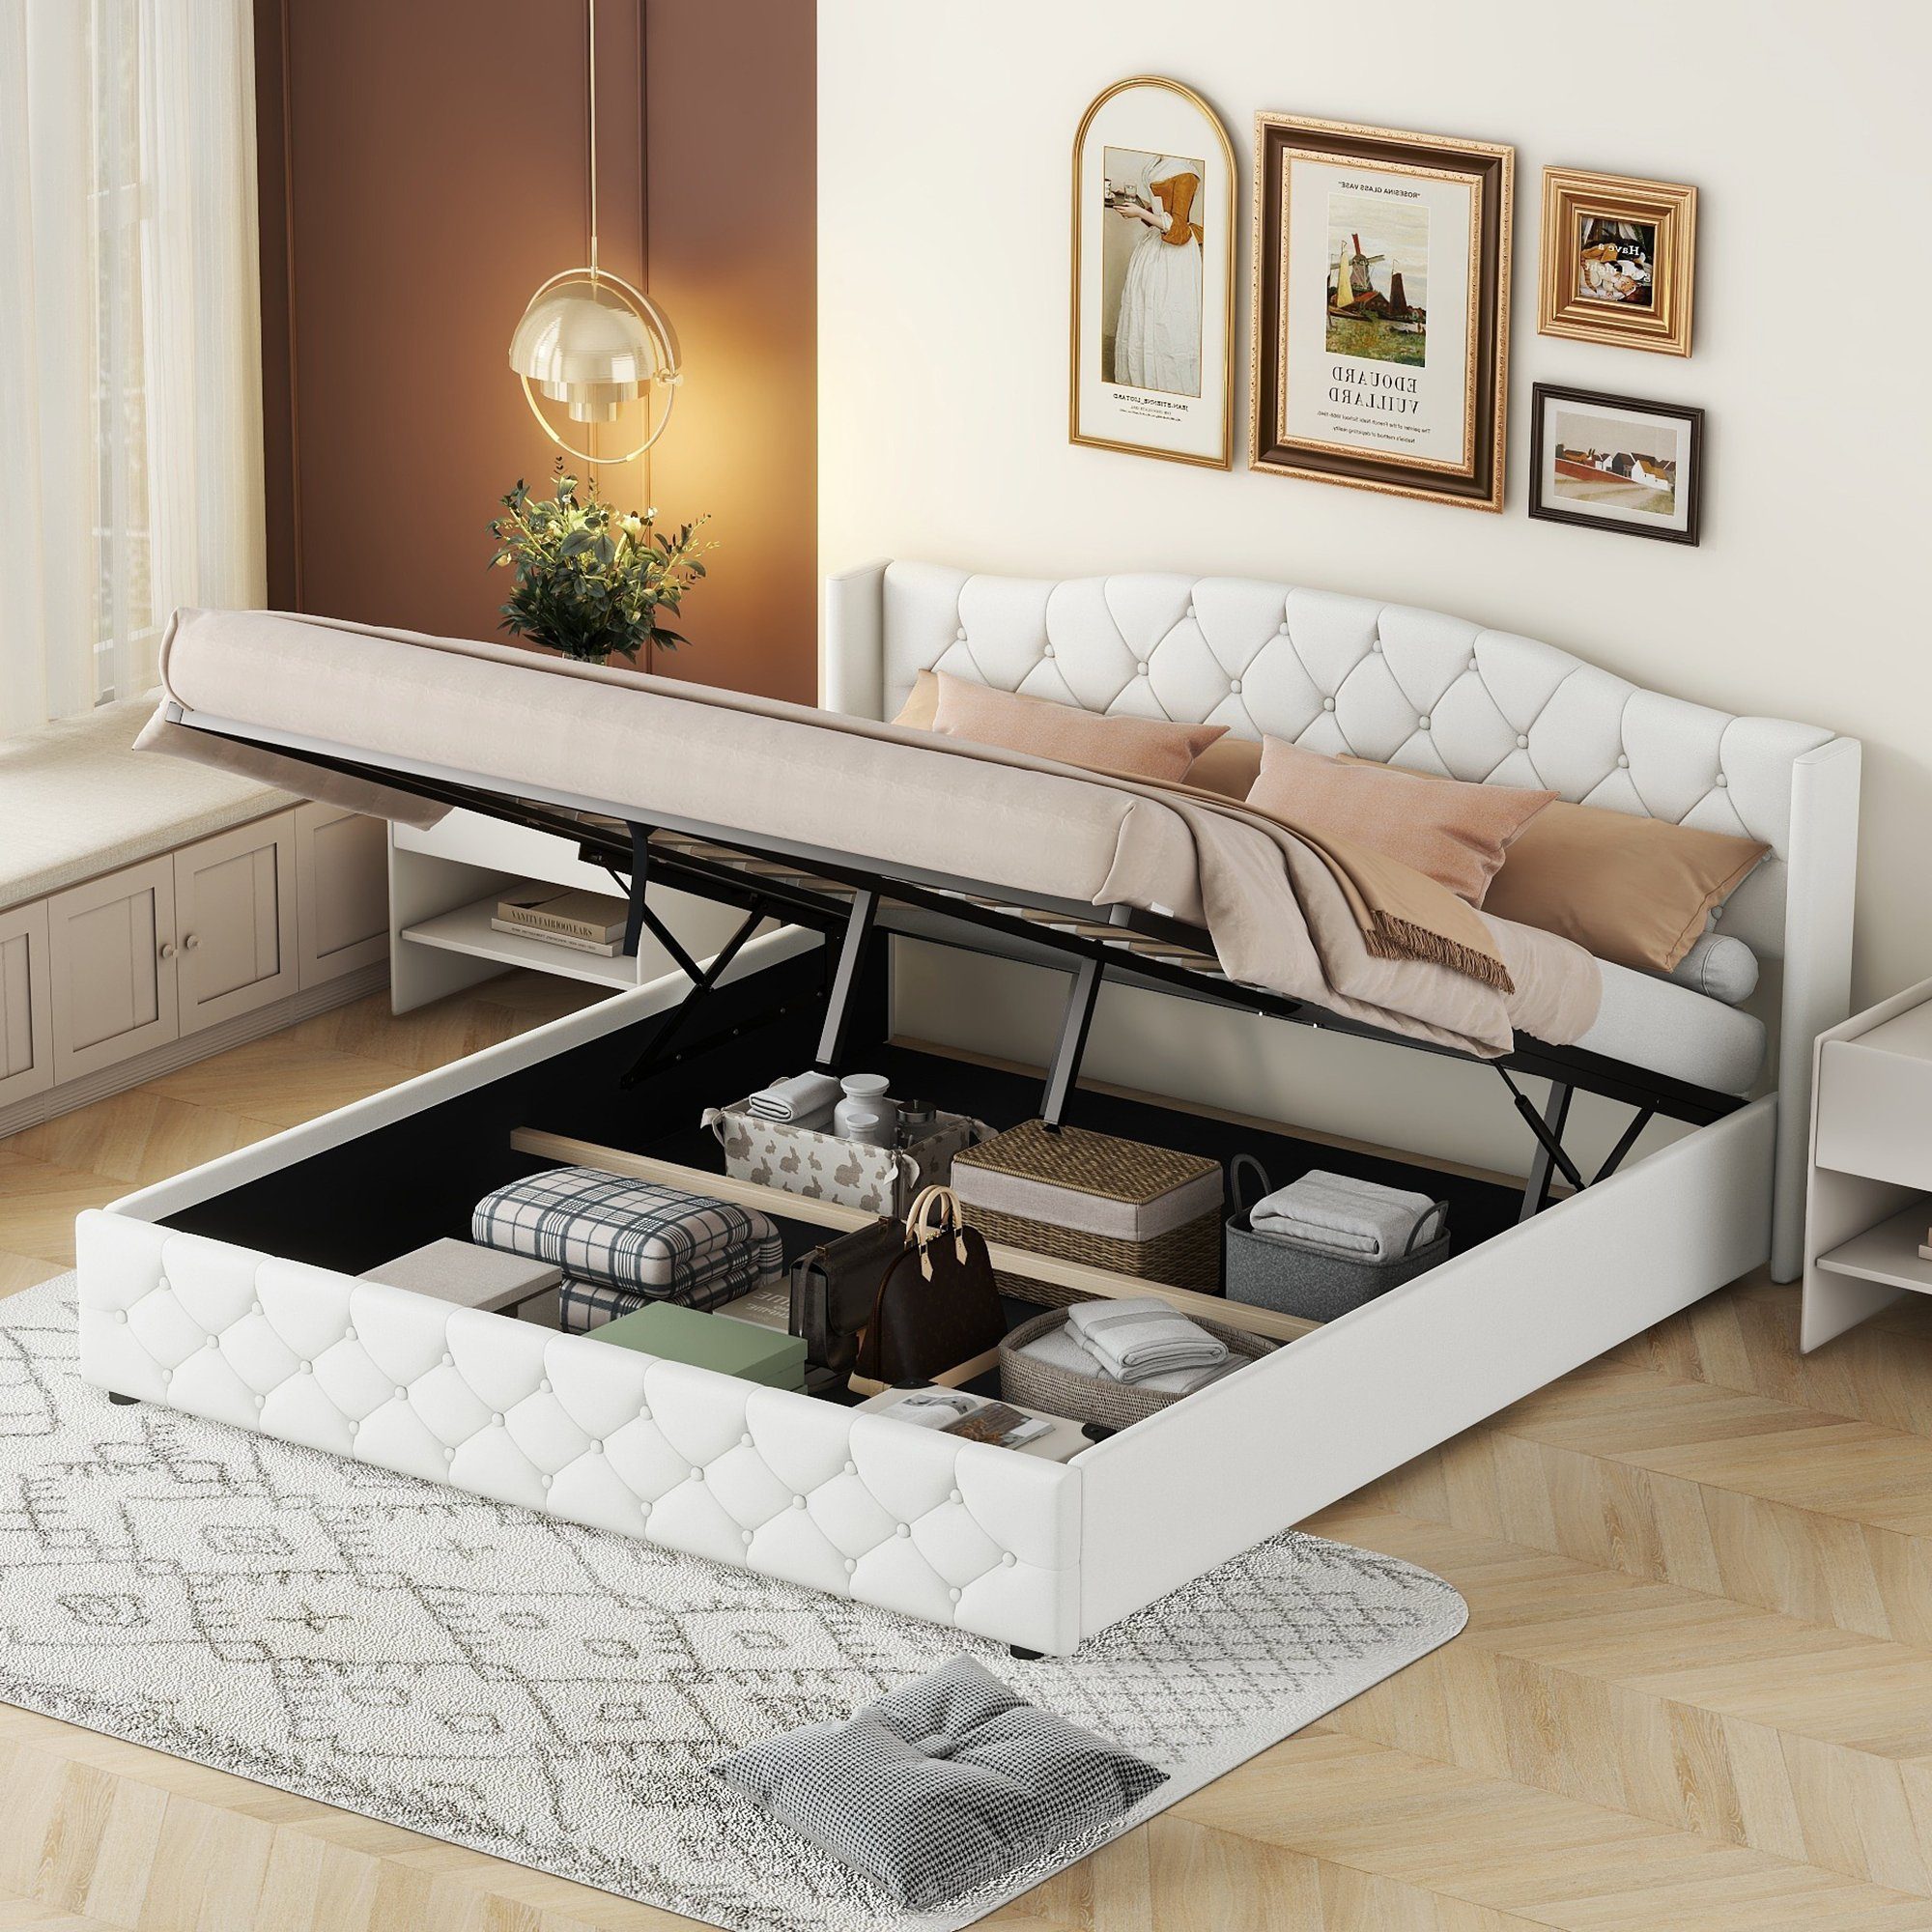 WISHDOR Polsterbett 180 x 200cm Funktionsbett Doppelbett Bett Stauraumbett (Multifunktionales Flachbett, mit hydraulischer Lagerung), Ohne Matratze Weiß